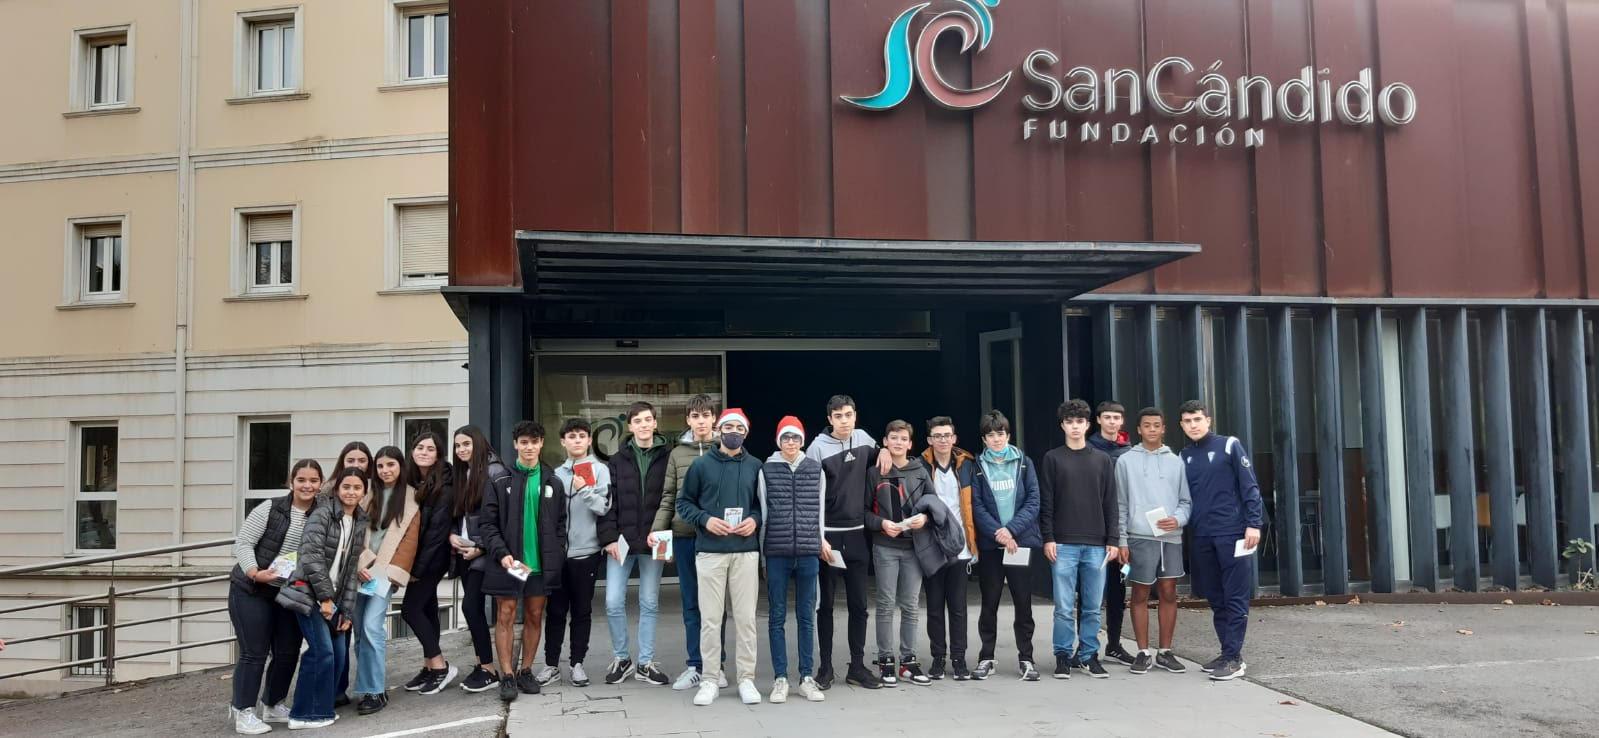 Grupos Cristianos visitan residencia San Cándido